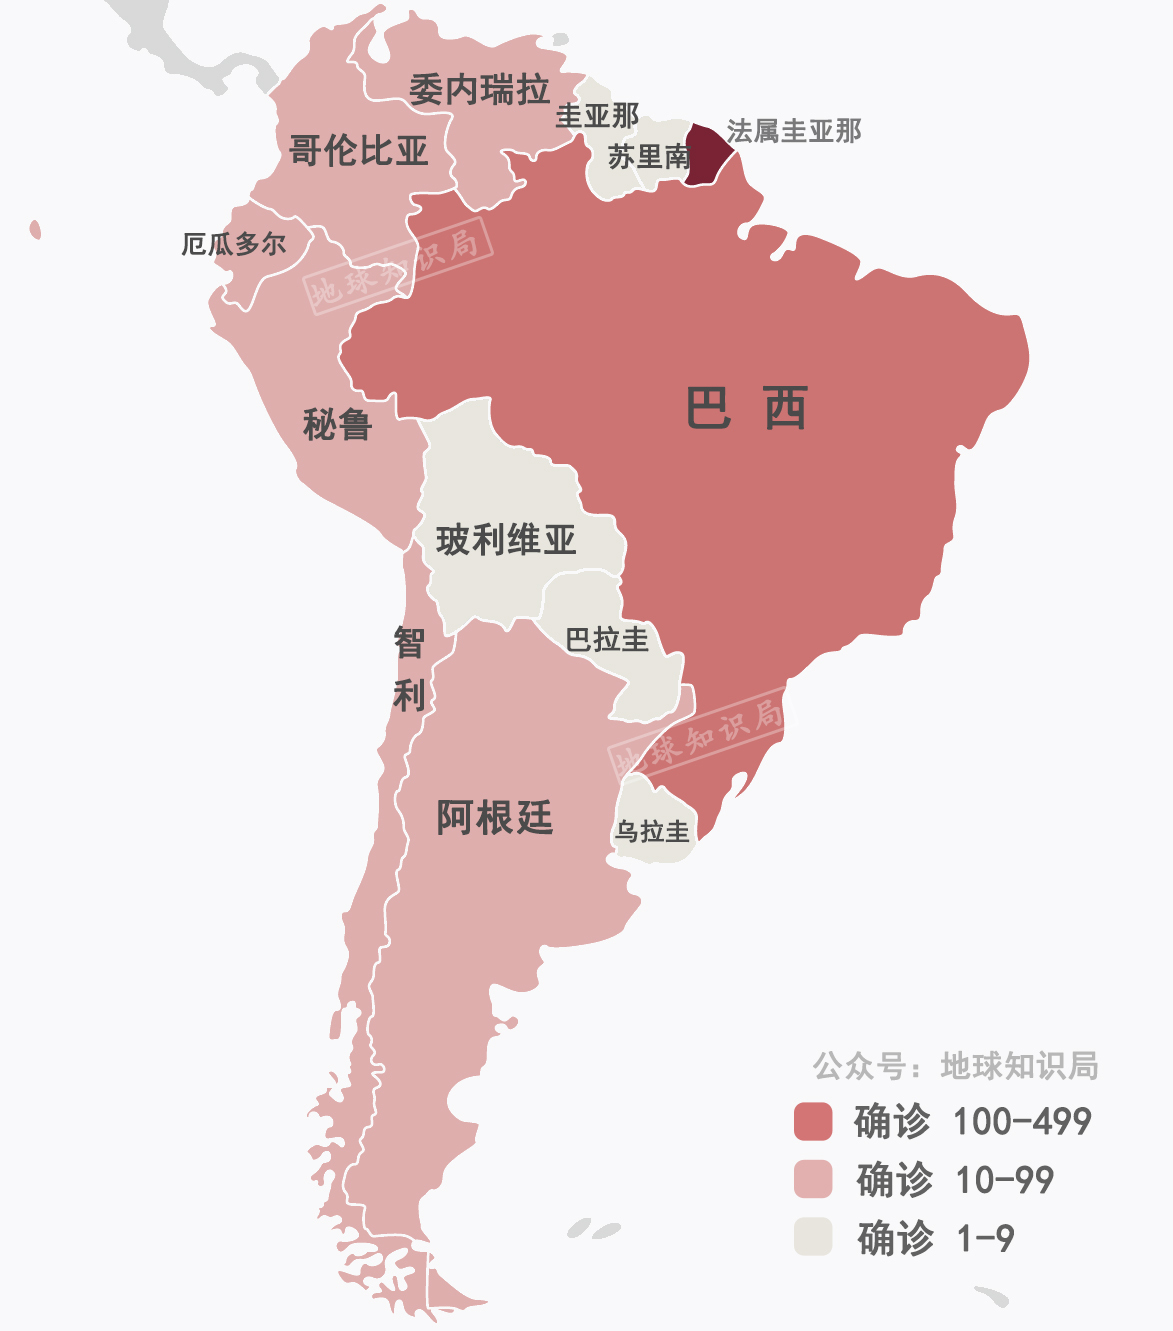 南美洲国家分布地图图片